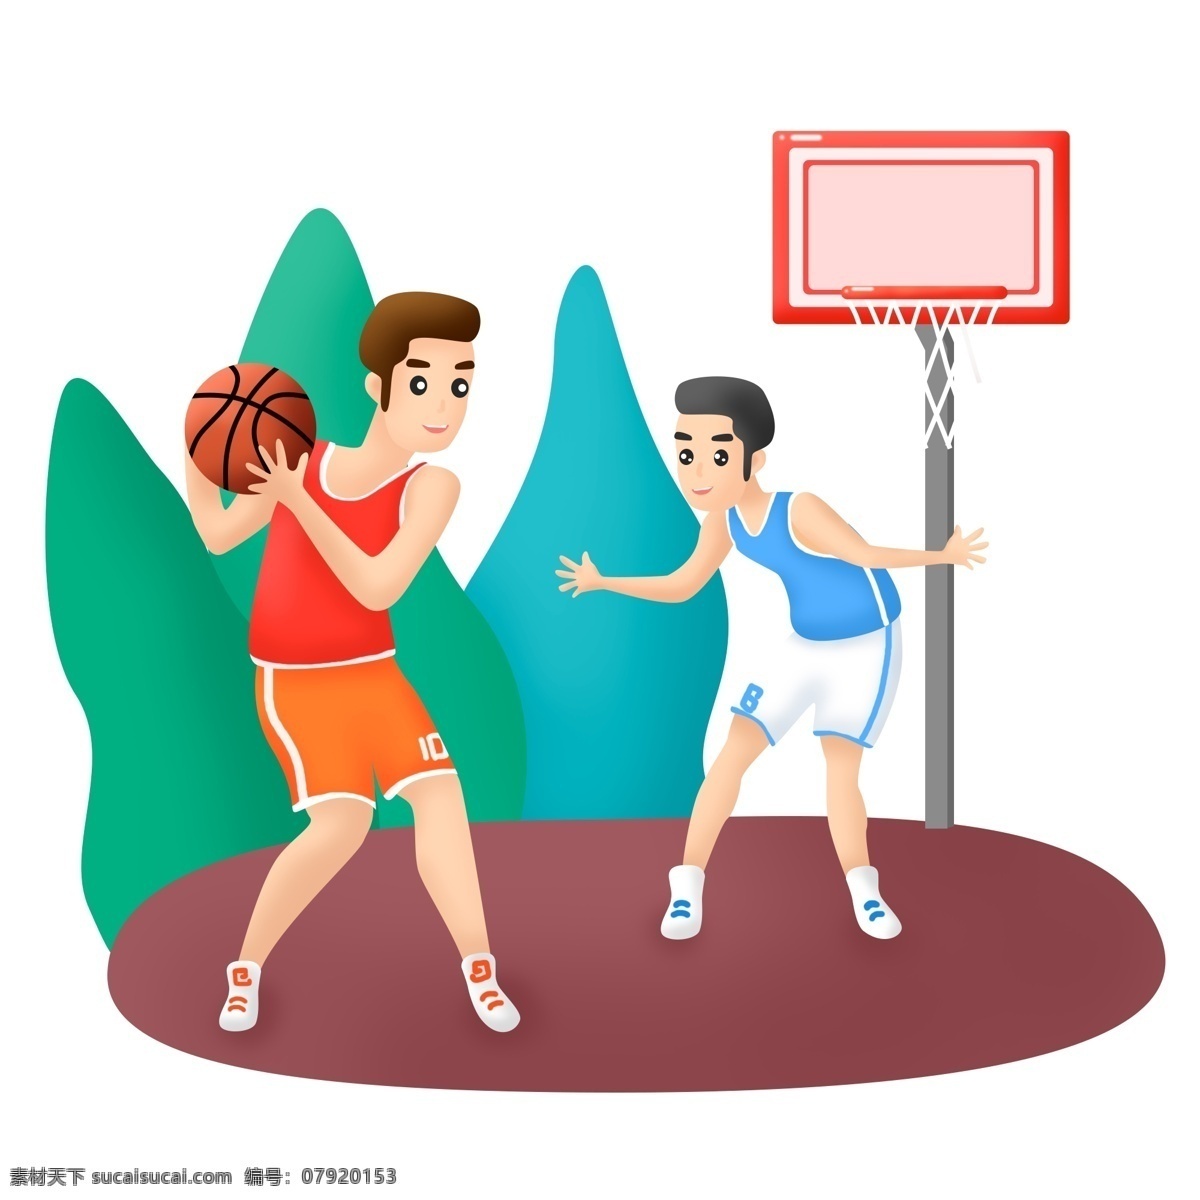 世界 篮球 日 双人 场景 元素 商用 户外 人物 体育 运动 世界篮球日 打篮球 球架 球框 树 篮球场